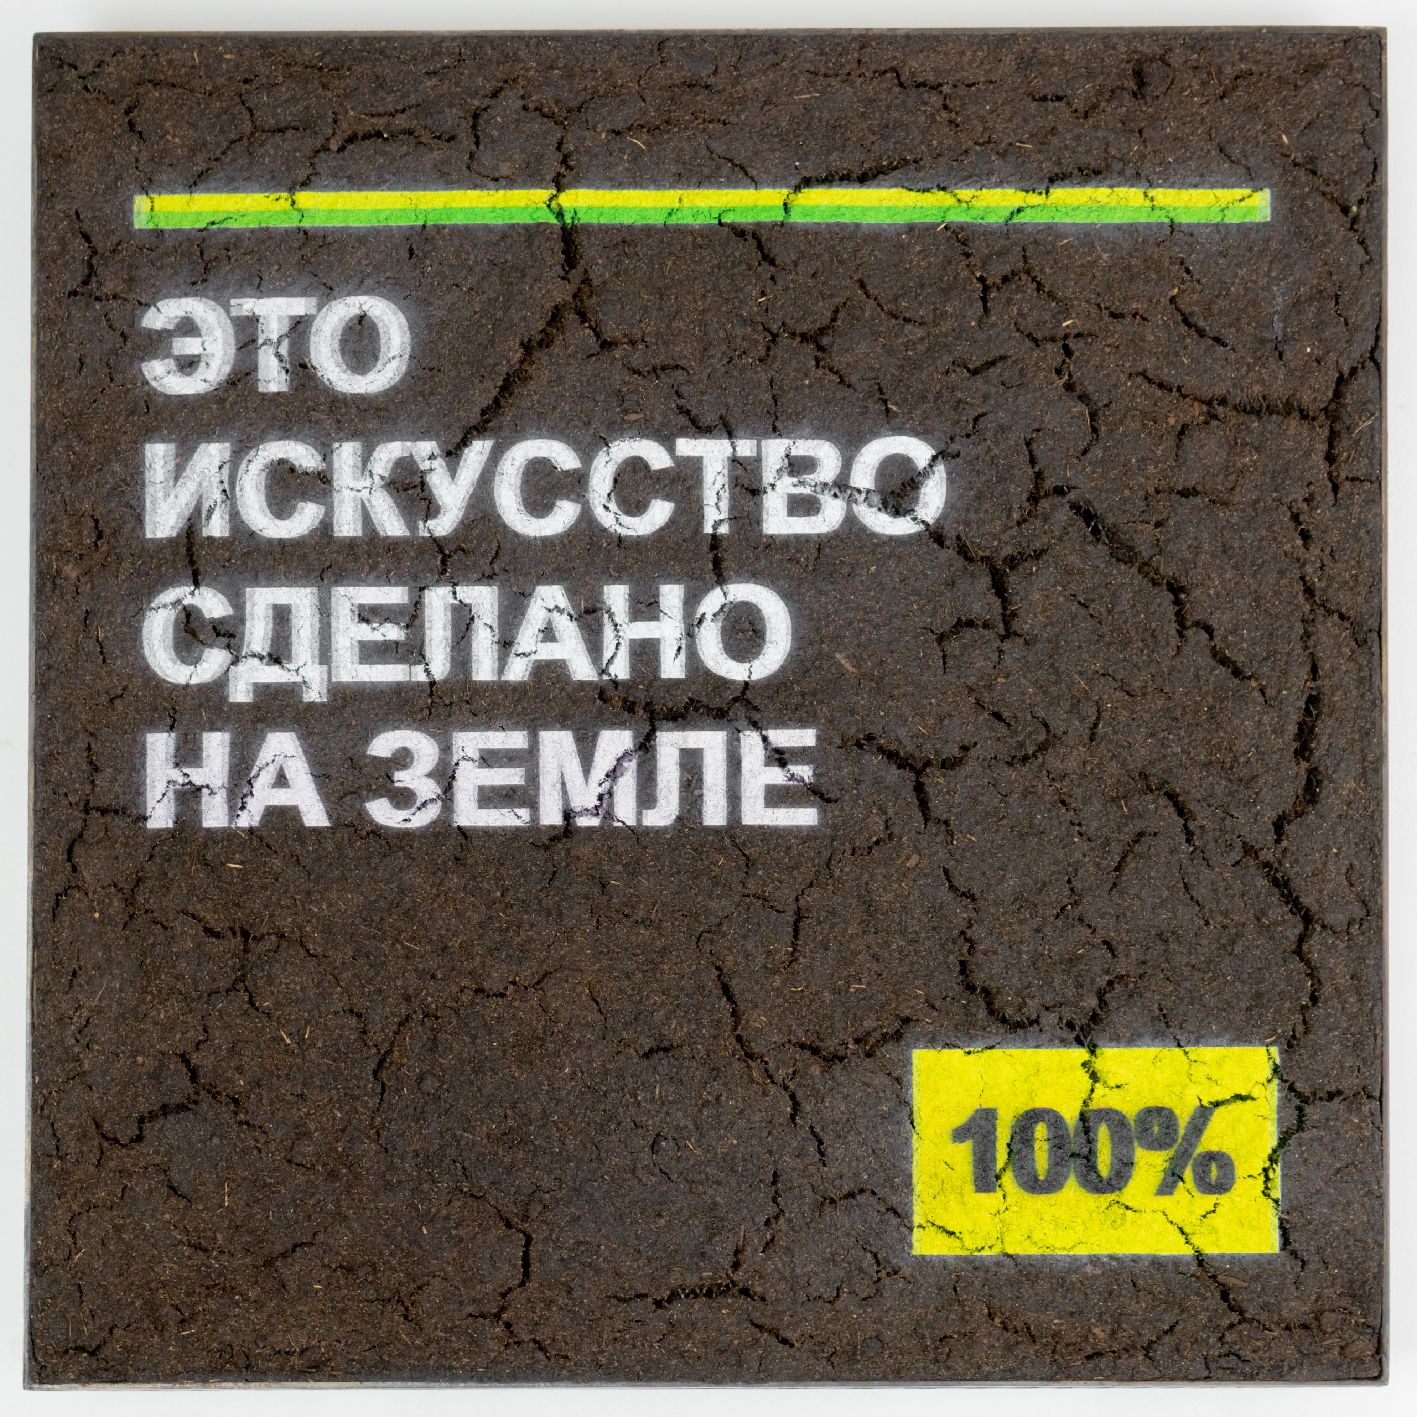 Андрей Сяйлев (Объект - 
                  40 x 40 см) Это искусство сделано на земле